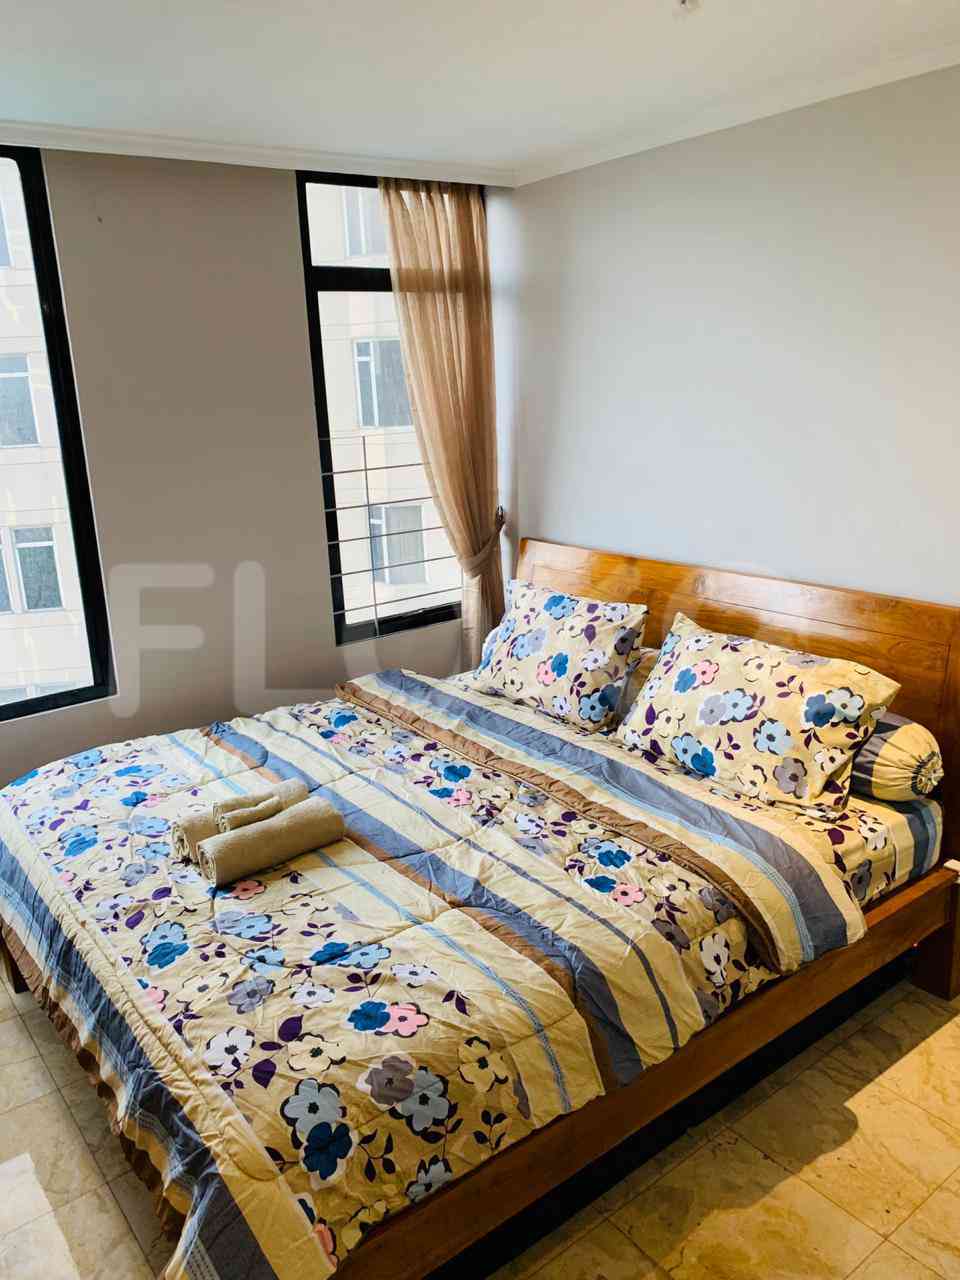 3 Bedroom on 4th Floor for Rent in Slipi Apartment - fsl82e 1